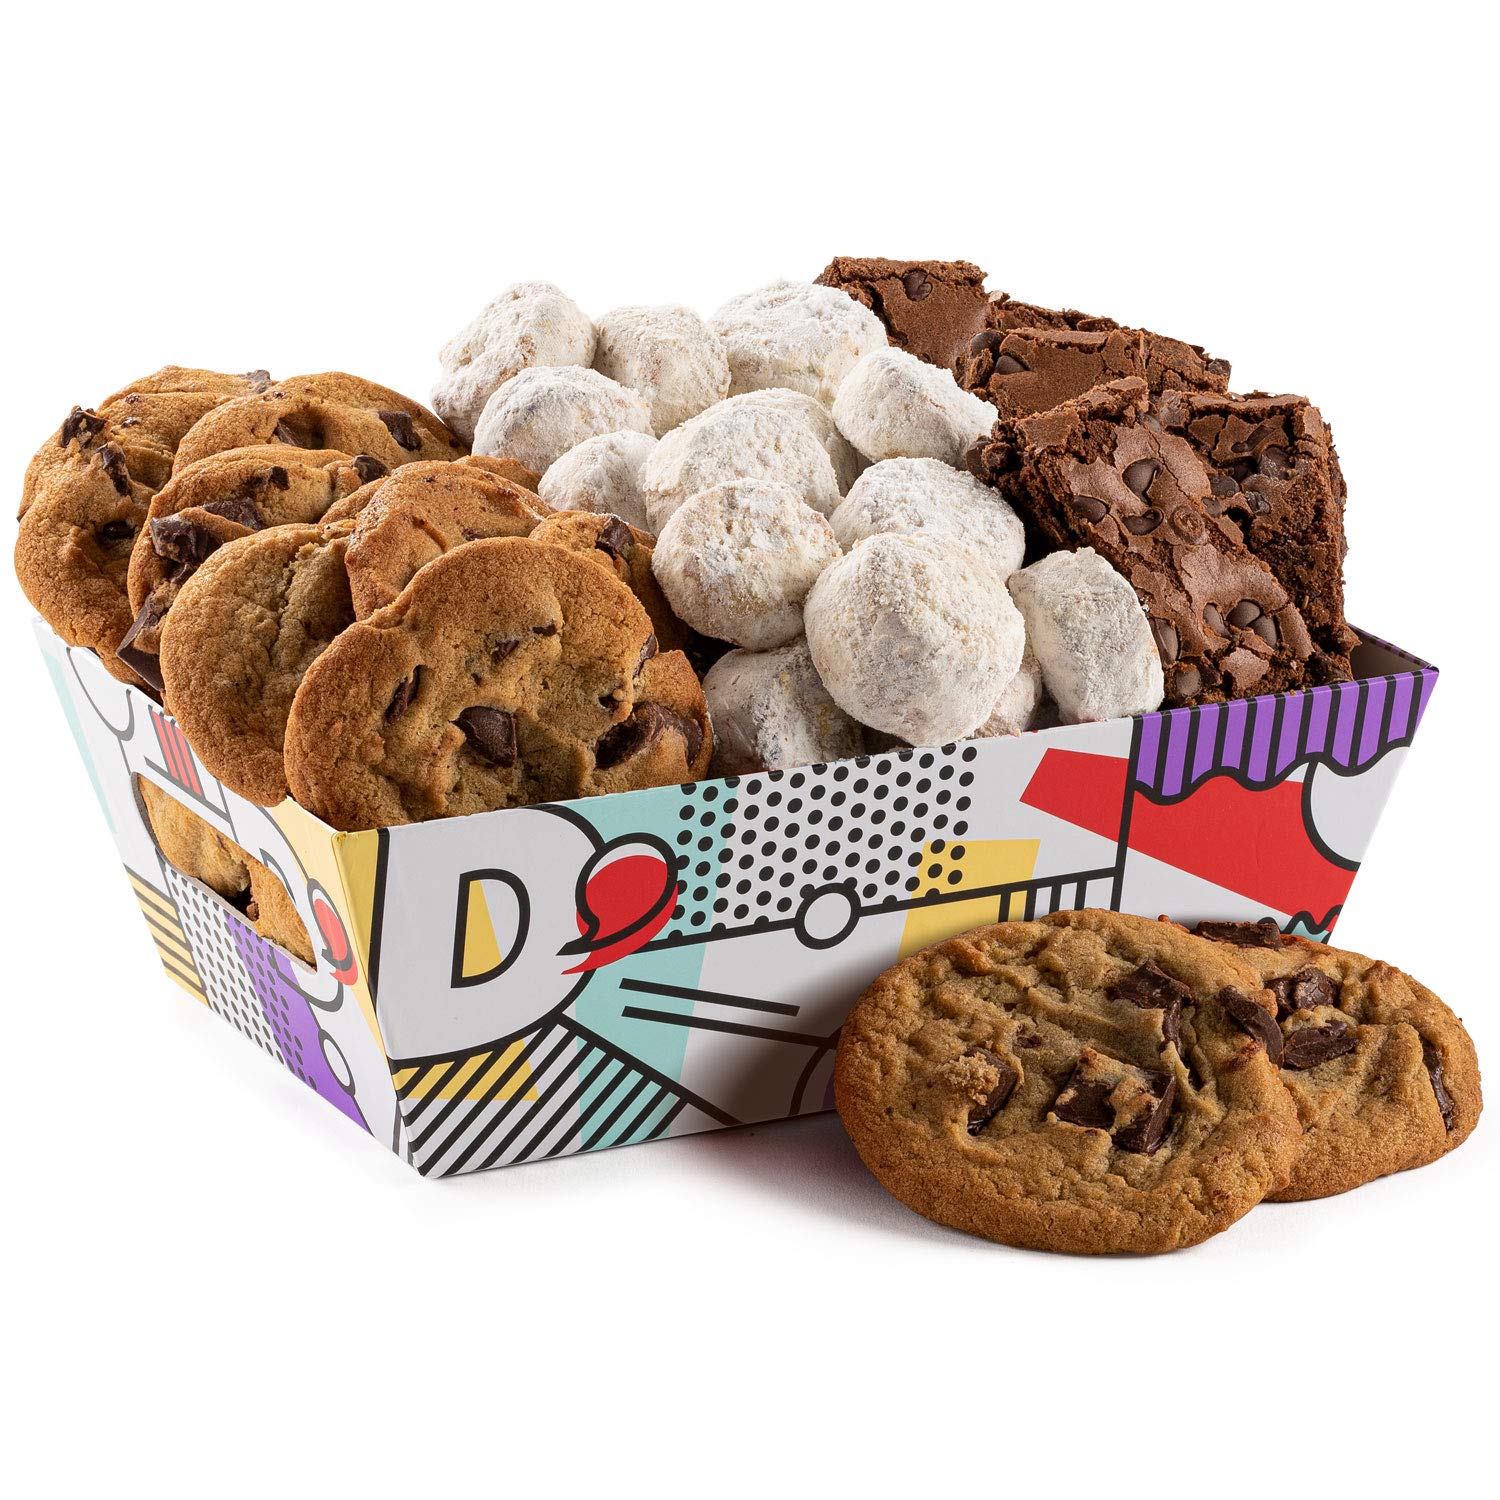 David's Cookies Basket Design - Branding by Miller Creative